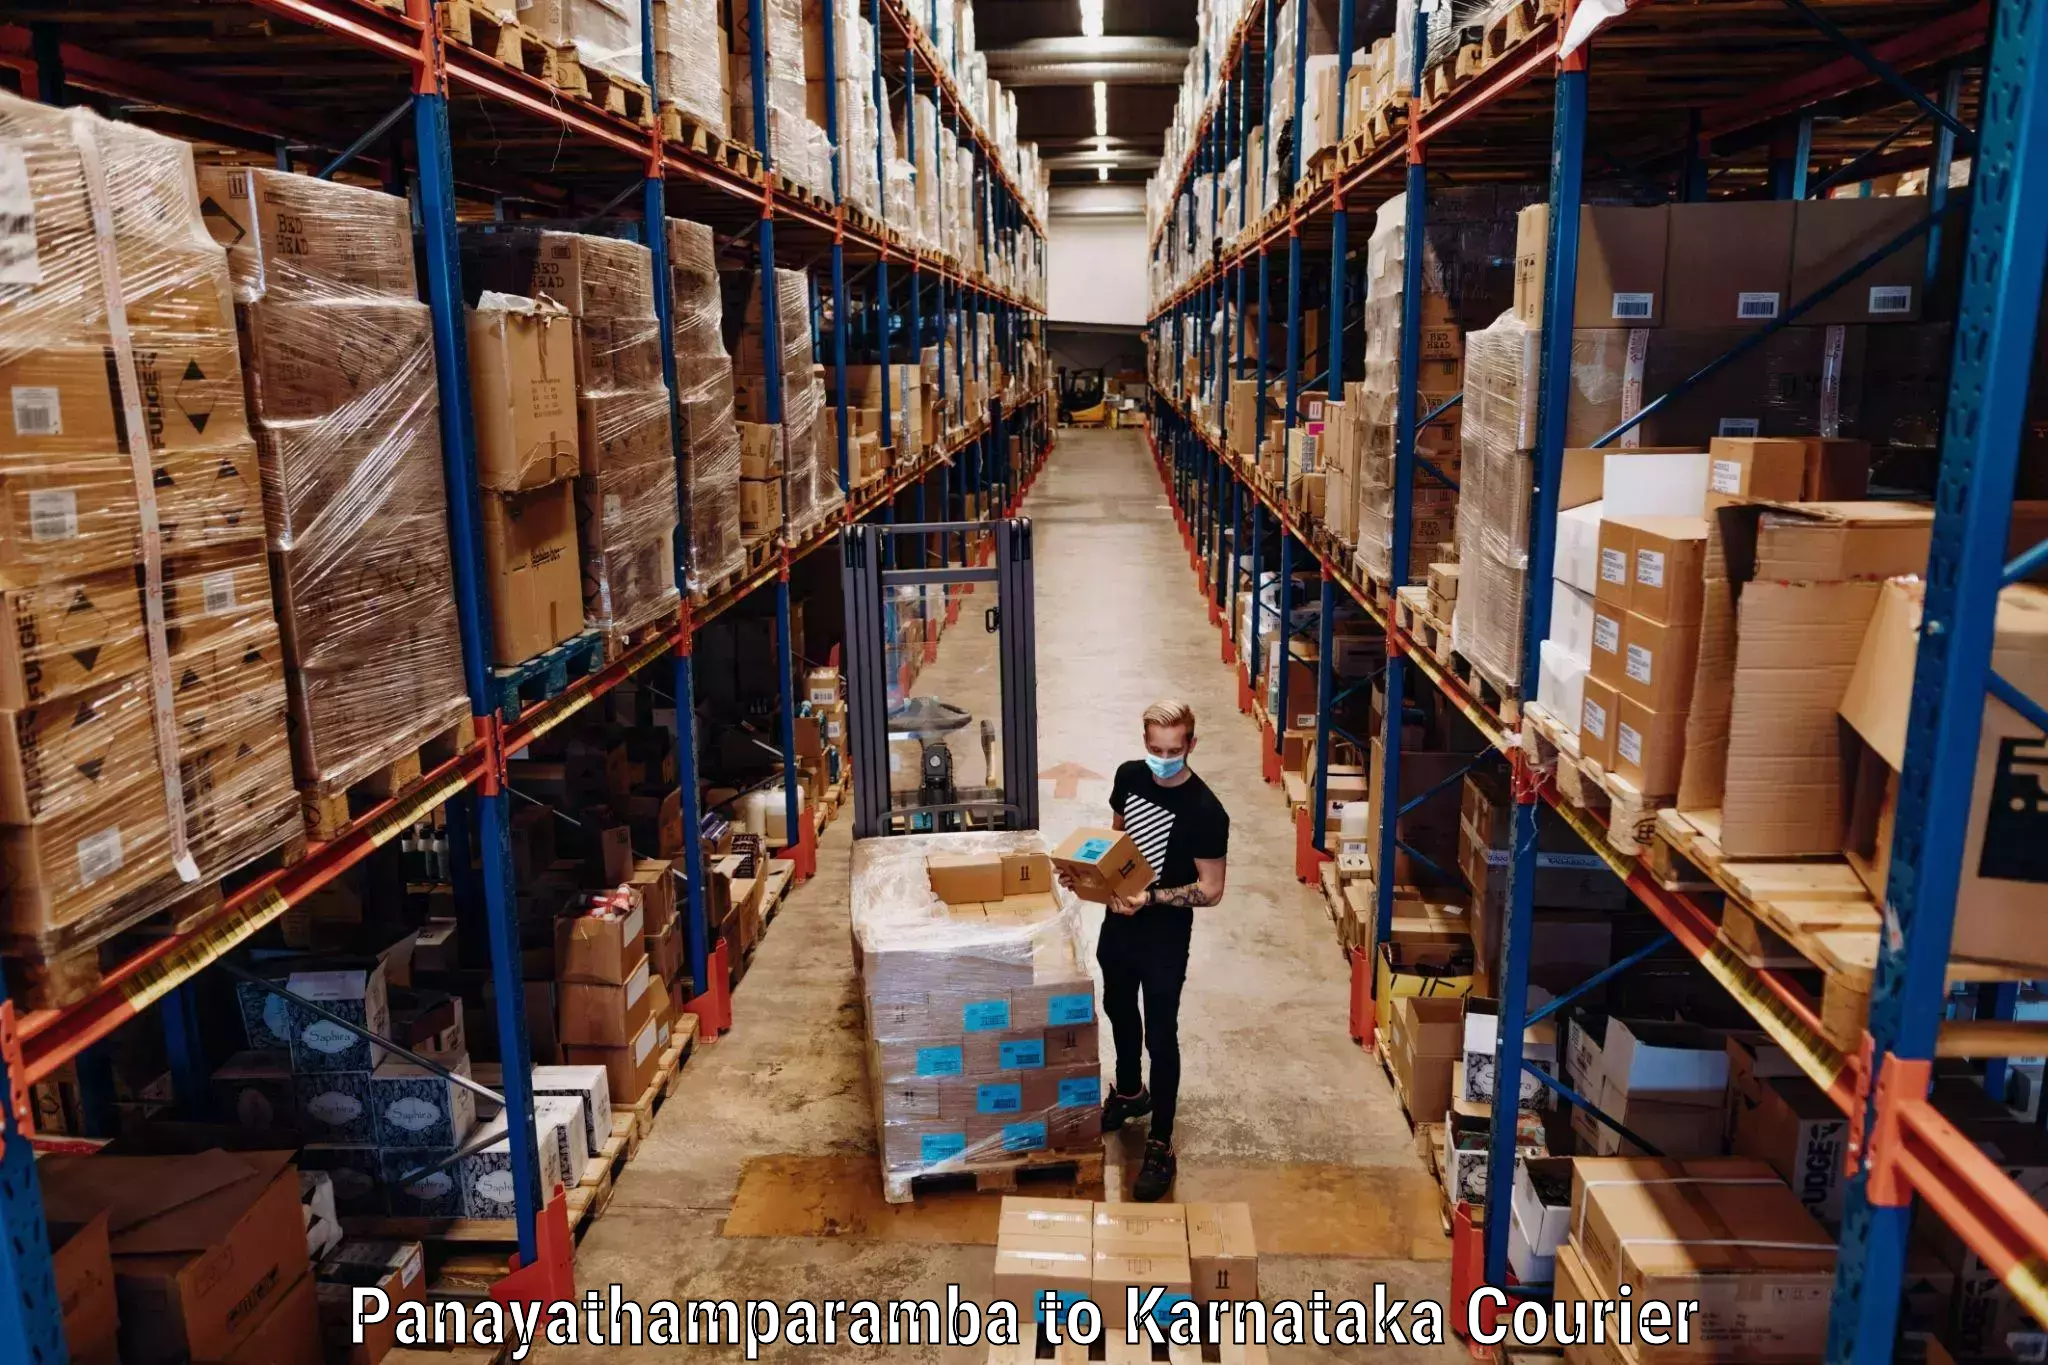 Comprehensive baggage service Panayathamparamba to Rajajinagar